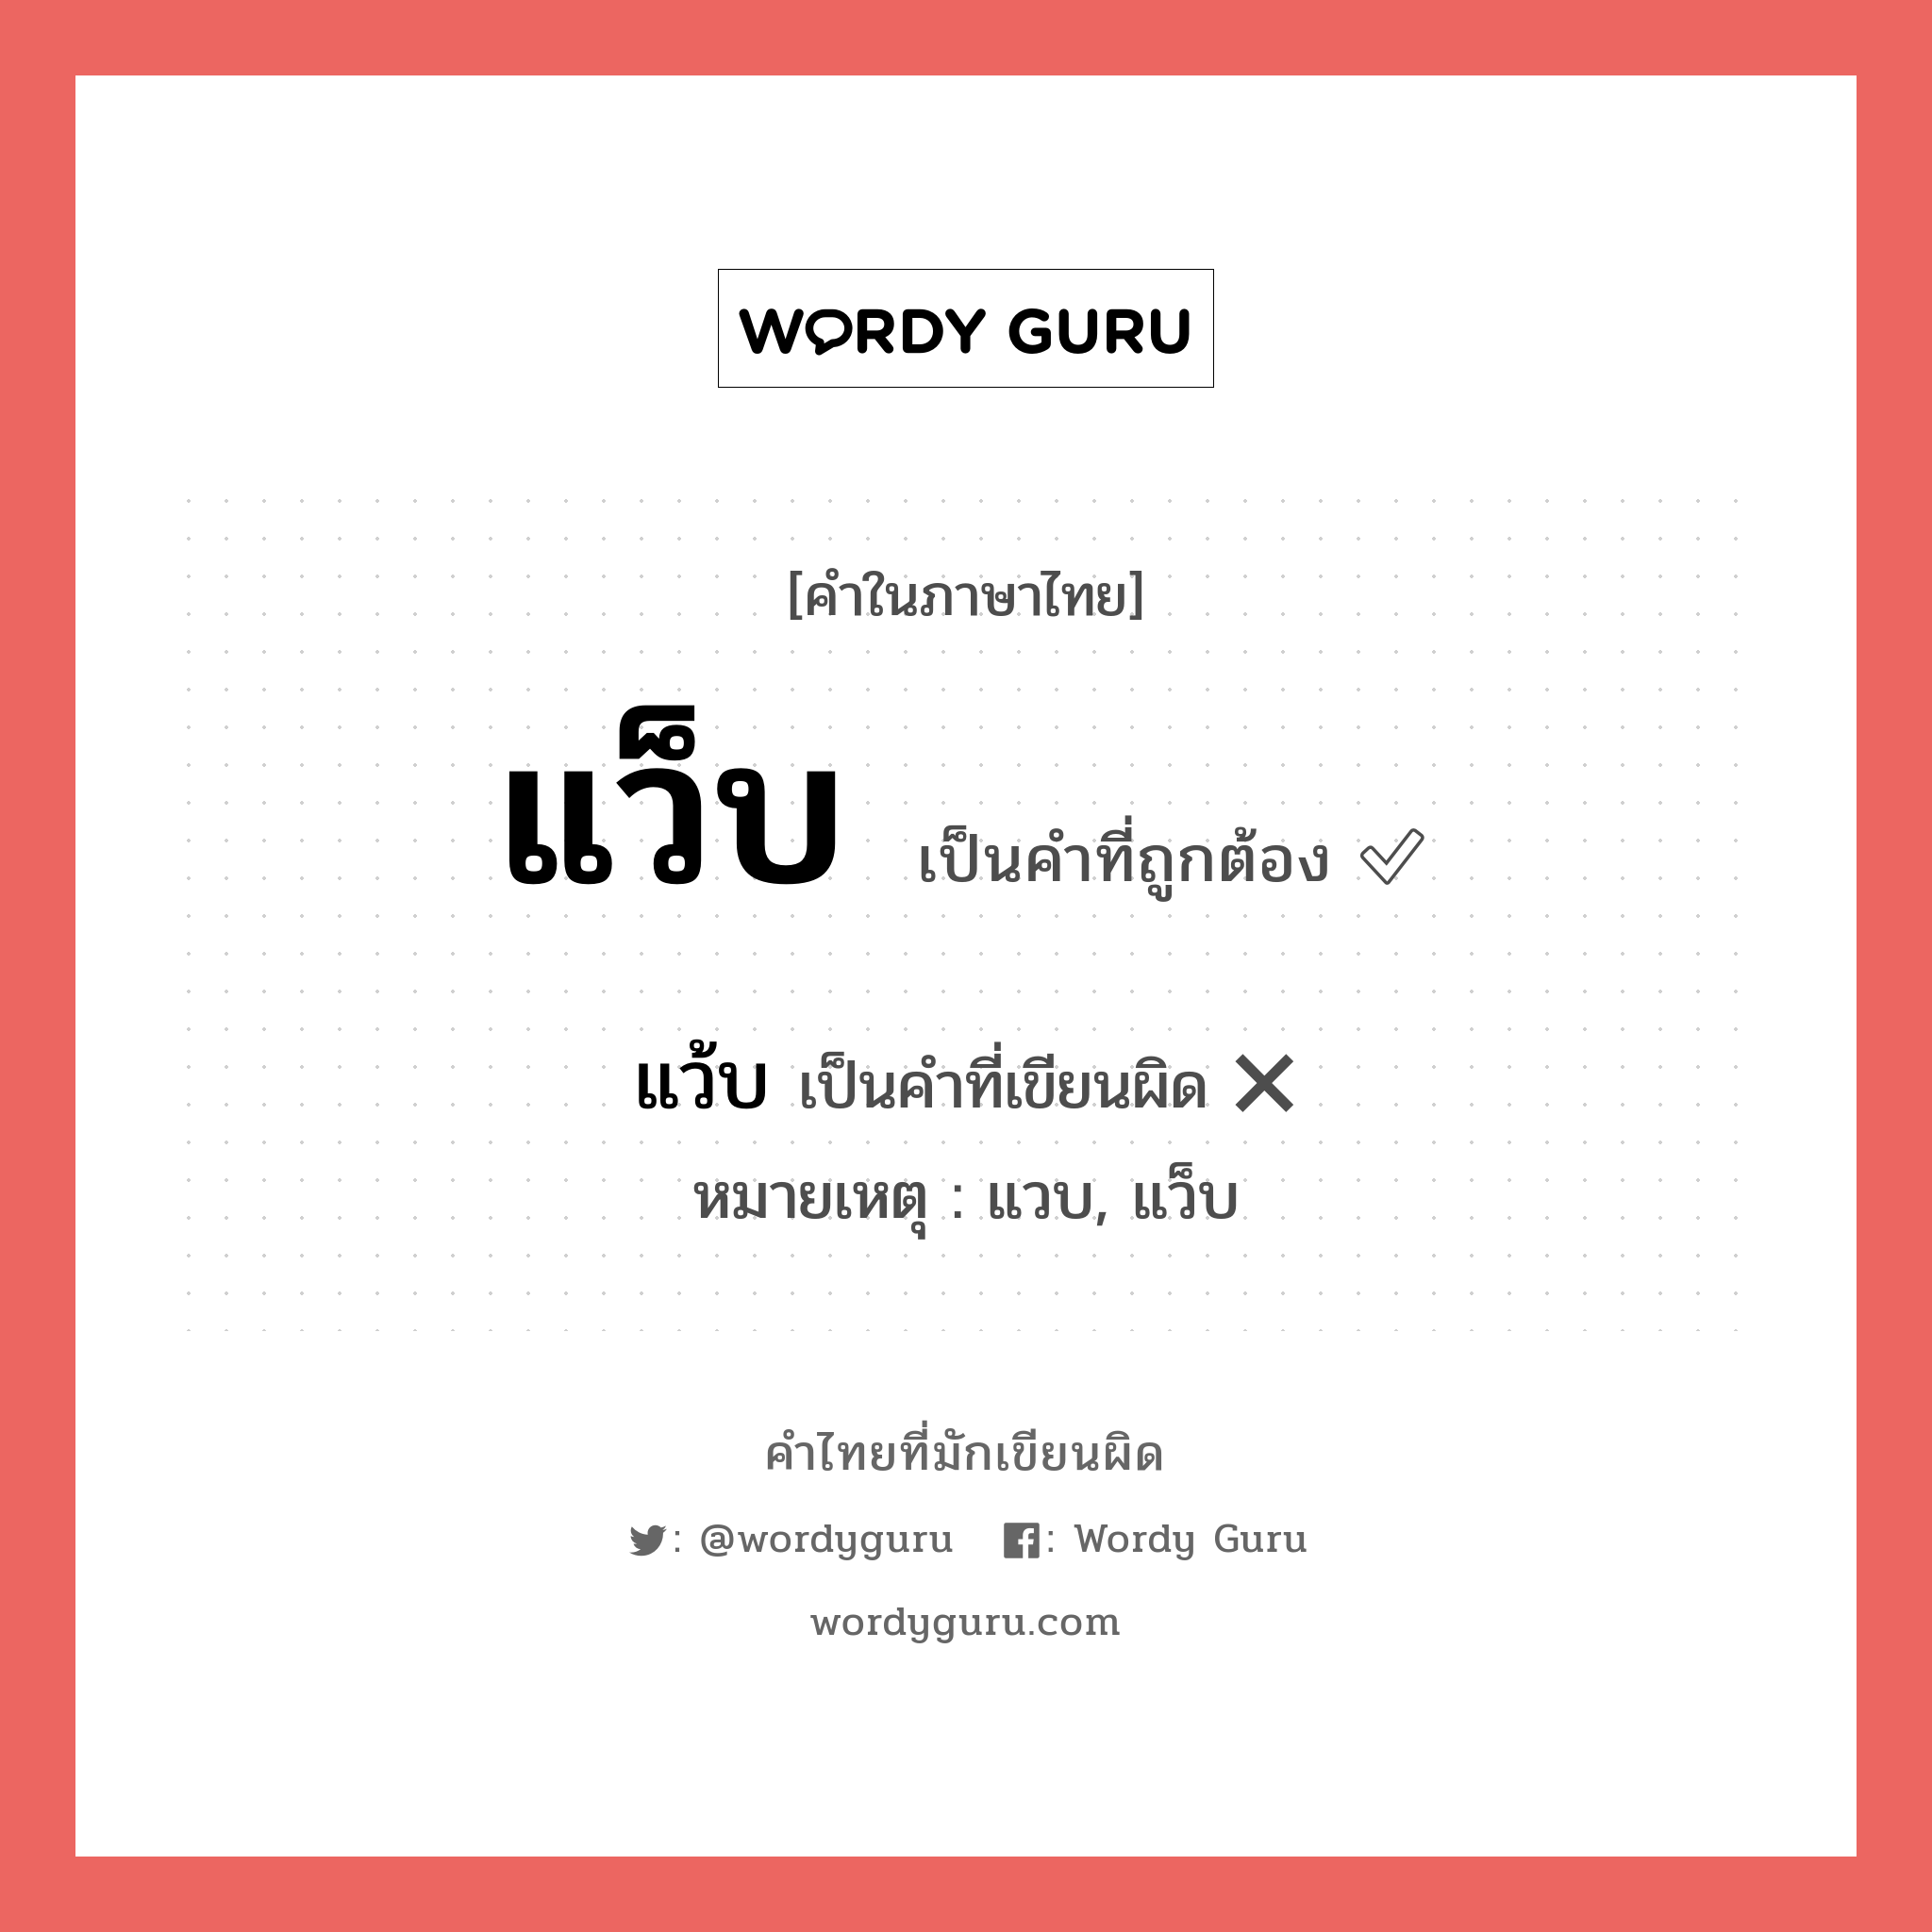 แว้บ หรือ แว็บ คำไหนเขียนถูก?, คำในภาษาไทยที่มักเขียนผิด แว้บ คำที่ผิด ❌ แว็บ หมายเหตุ แวบ, แว็บ